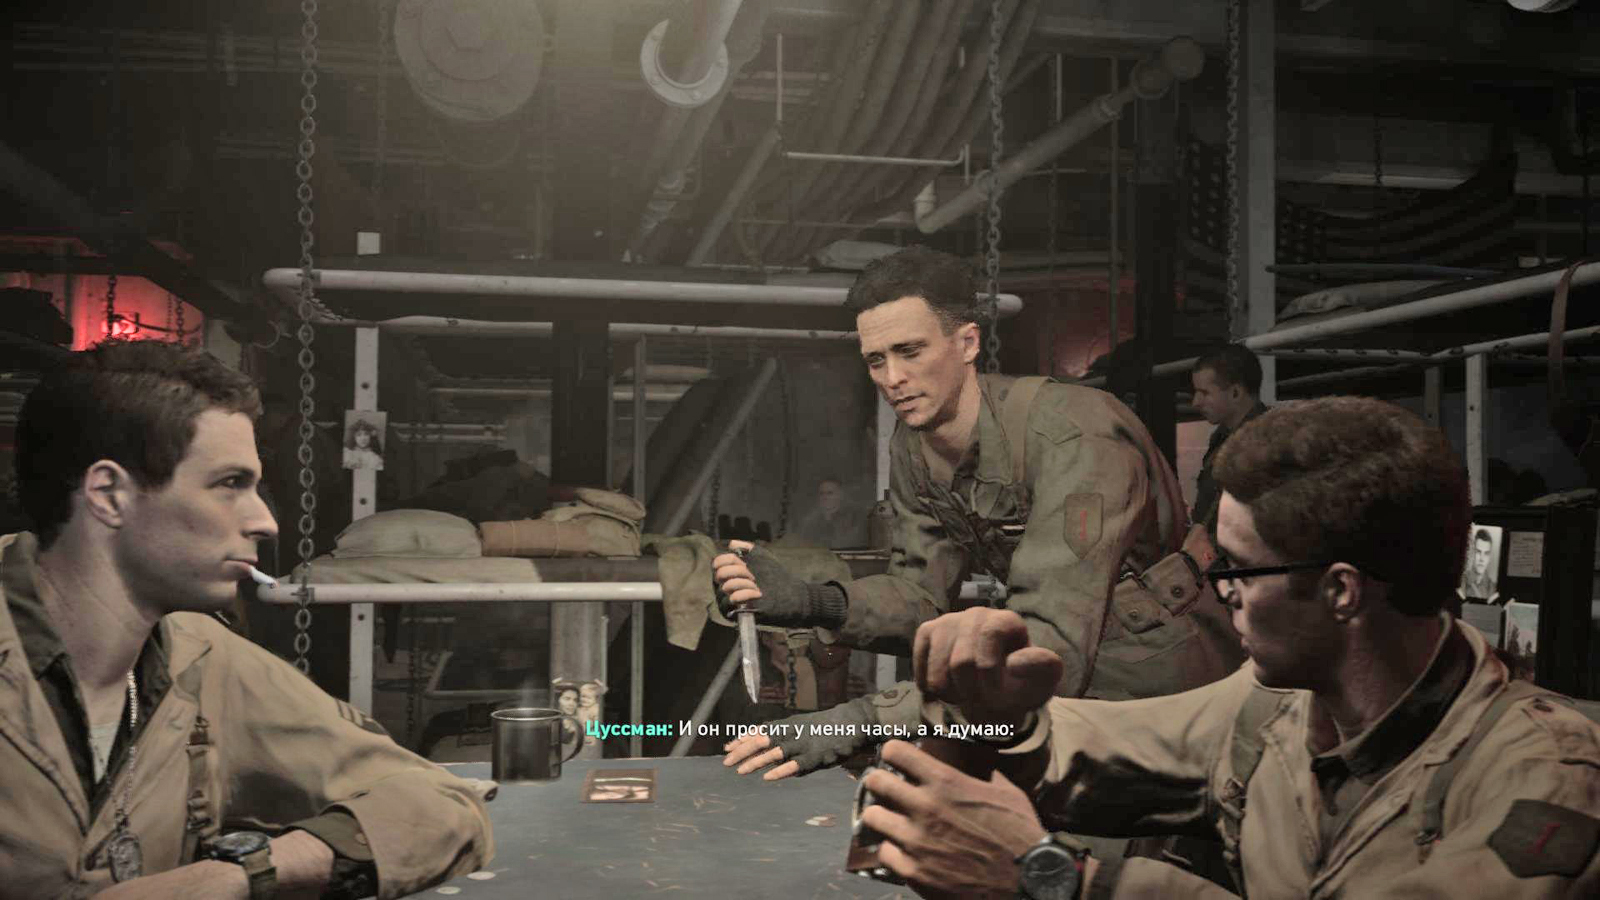 Игра Call of Duty: World at War II (Зов долга: Вторая мировая война) в городе Валуйки, фото 8, Компьютерные игры